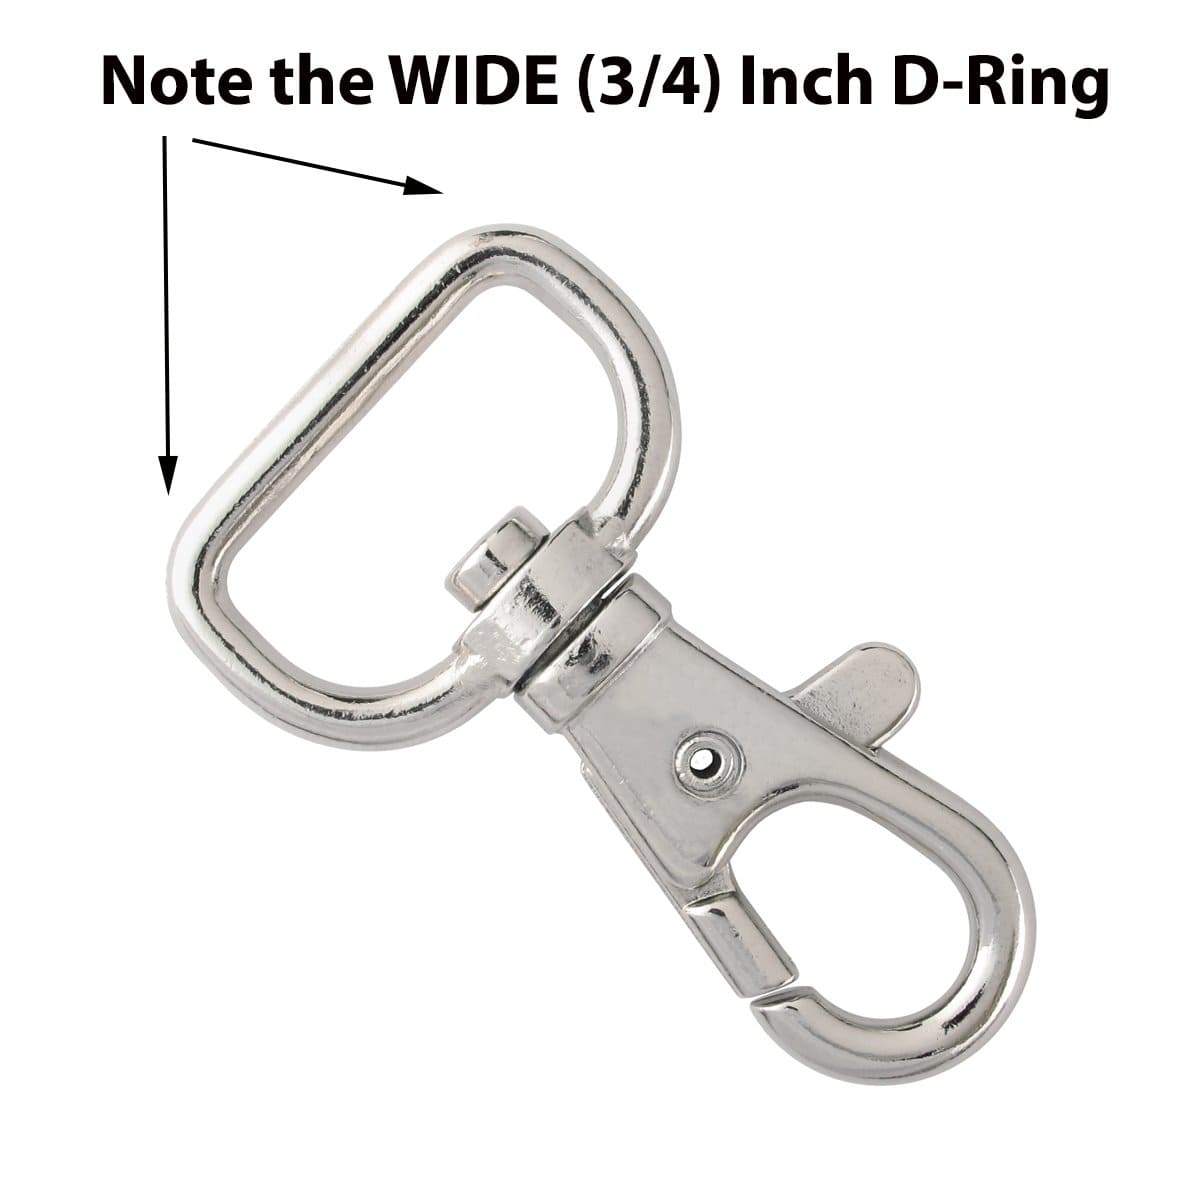 Small Swivel Hook & D-Rings